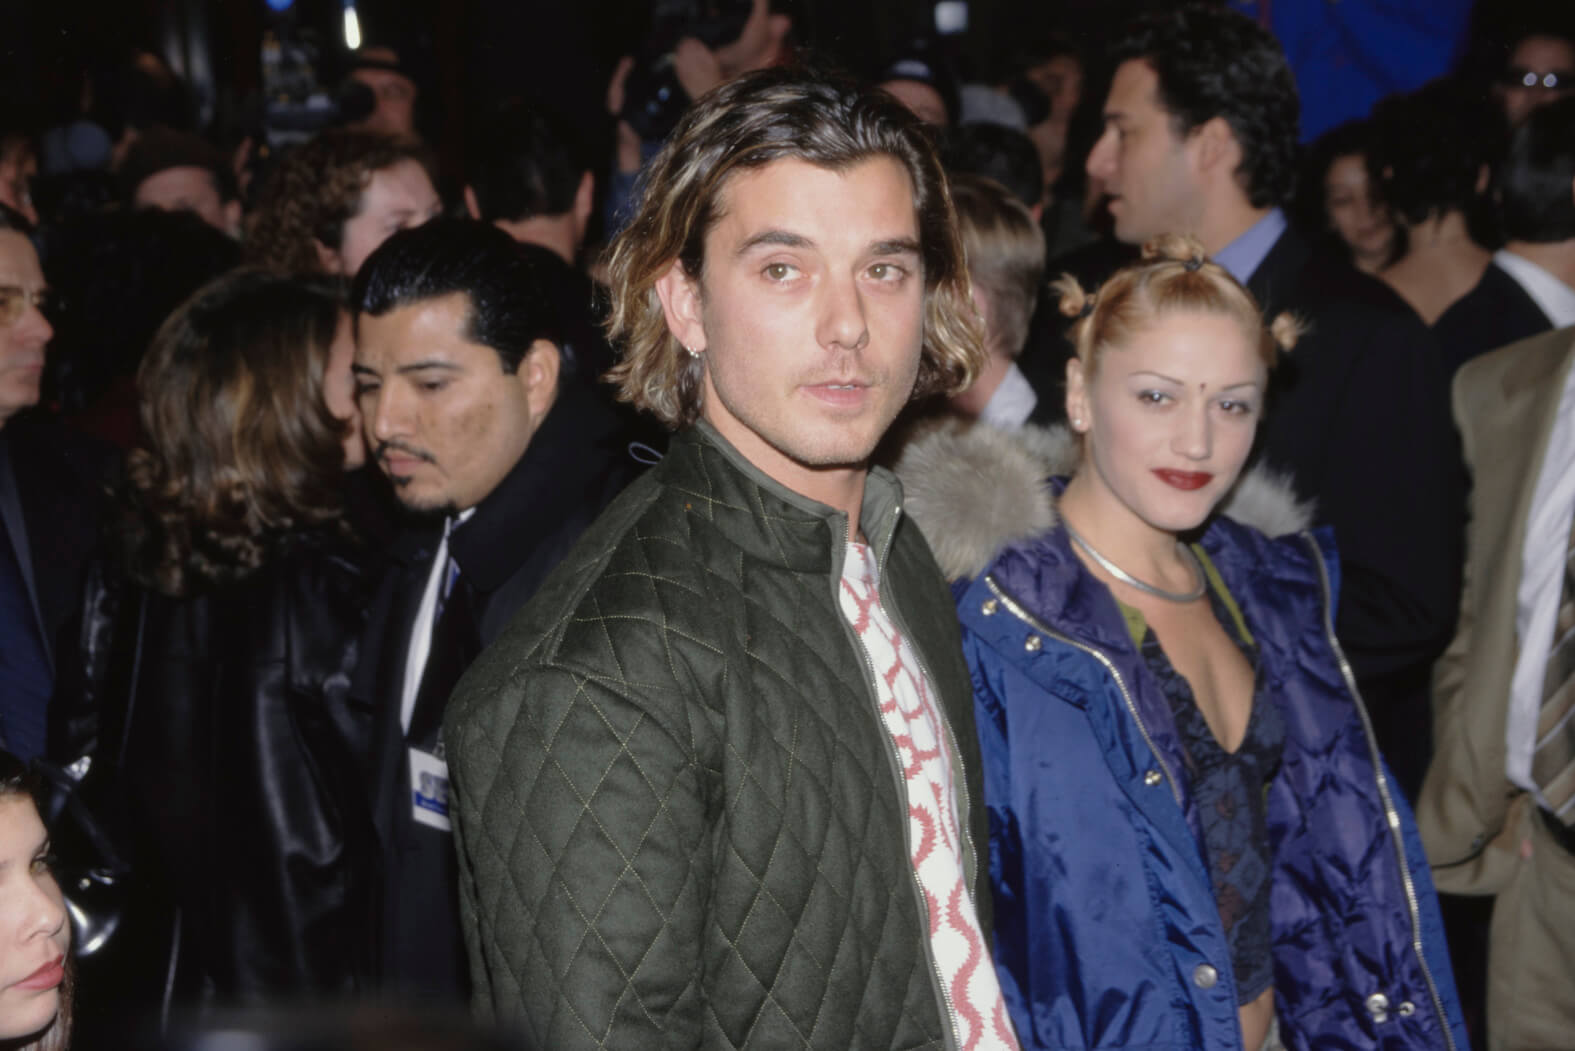 Gavin Rossdale walking next to Gwen Stefani in a crowd in 1997